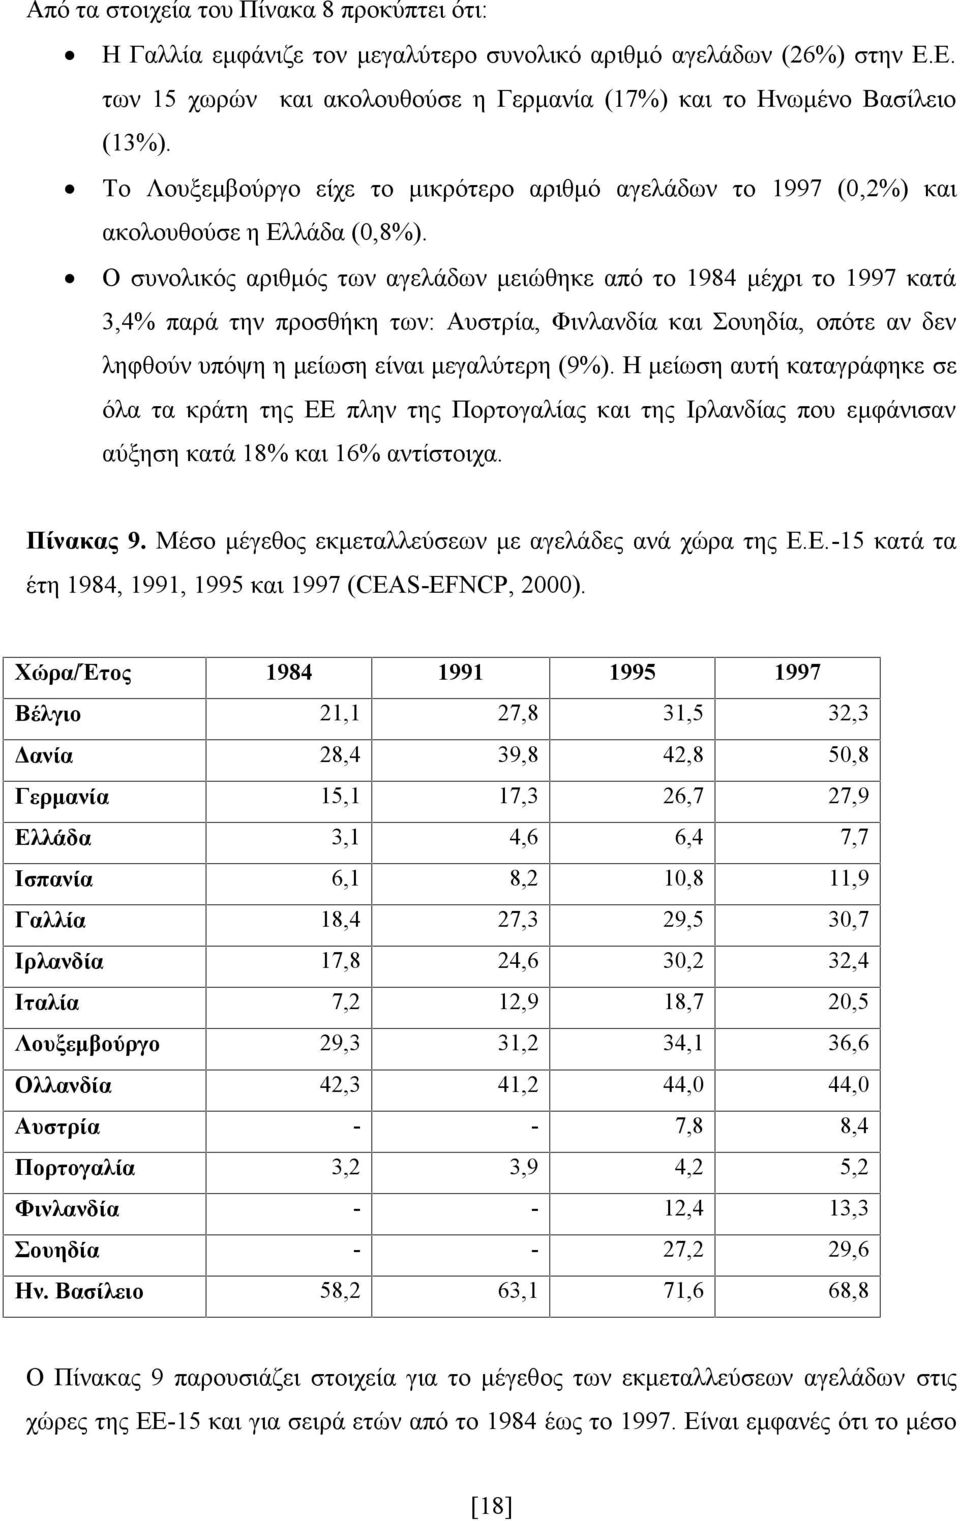 Ο συνολικός αριθμός των αγελάδων μειώθηκε από το 1984 μέχρι το 1997 κατά 3,4% παρά την προσθήκη των: Αυστρία, Φινλανδία και Σουηδία, οπότε αν δεν ληφθούν υπόψη η μείωση είναι μεγαλύτερη (9%).